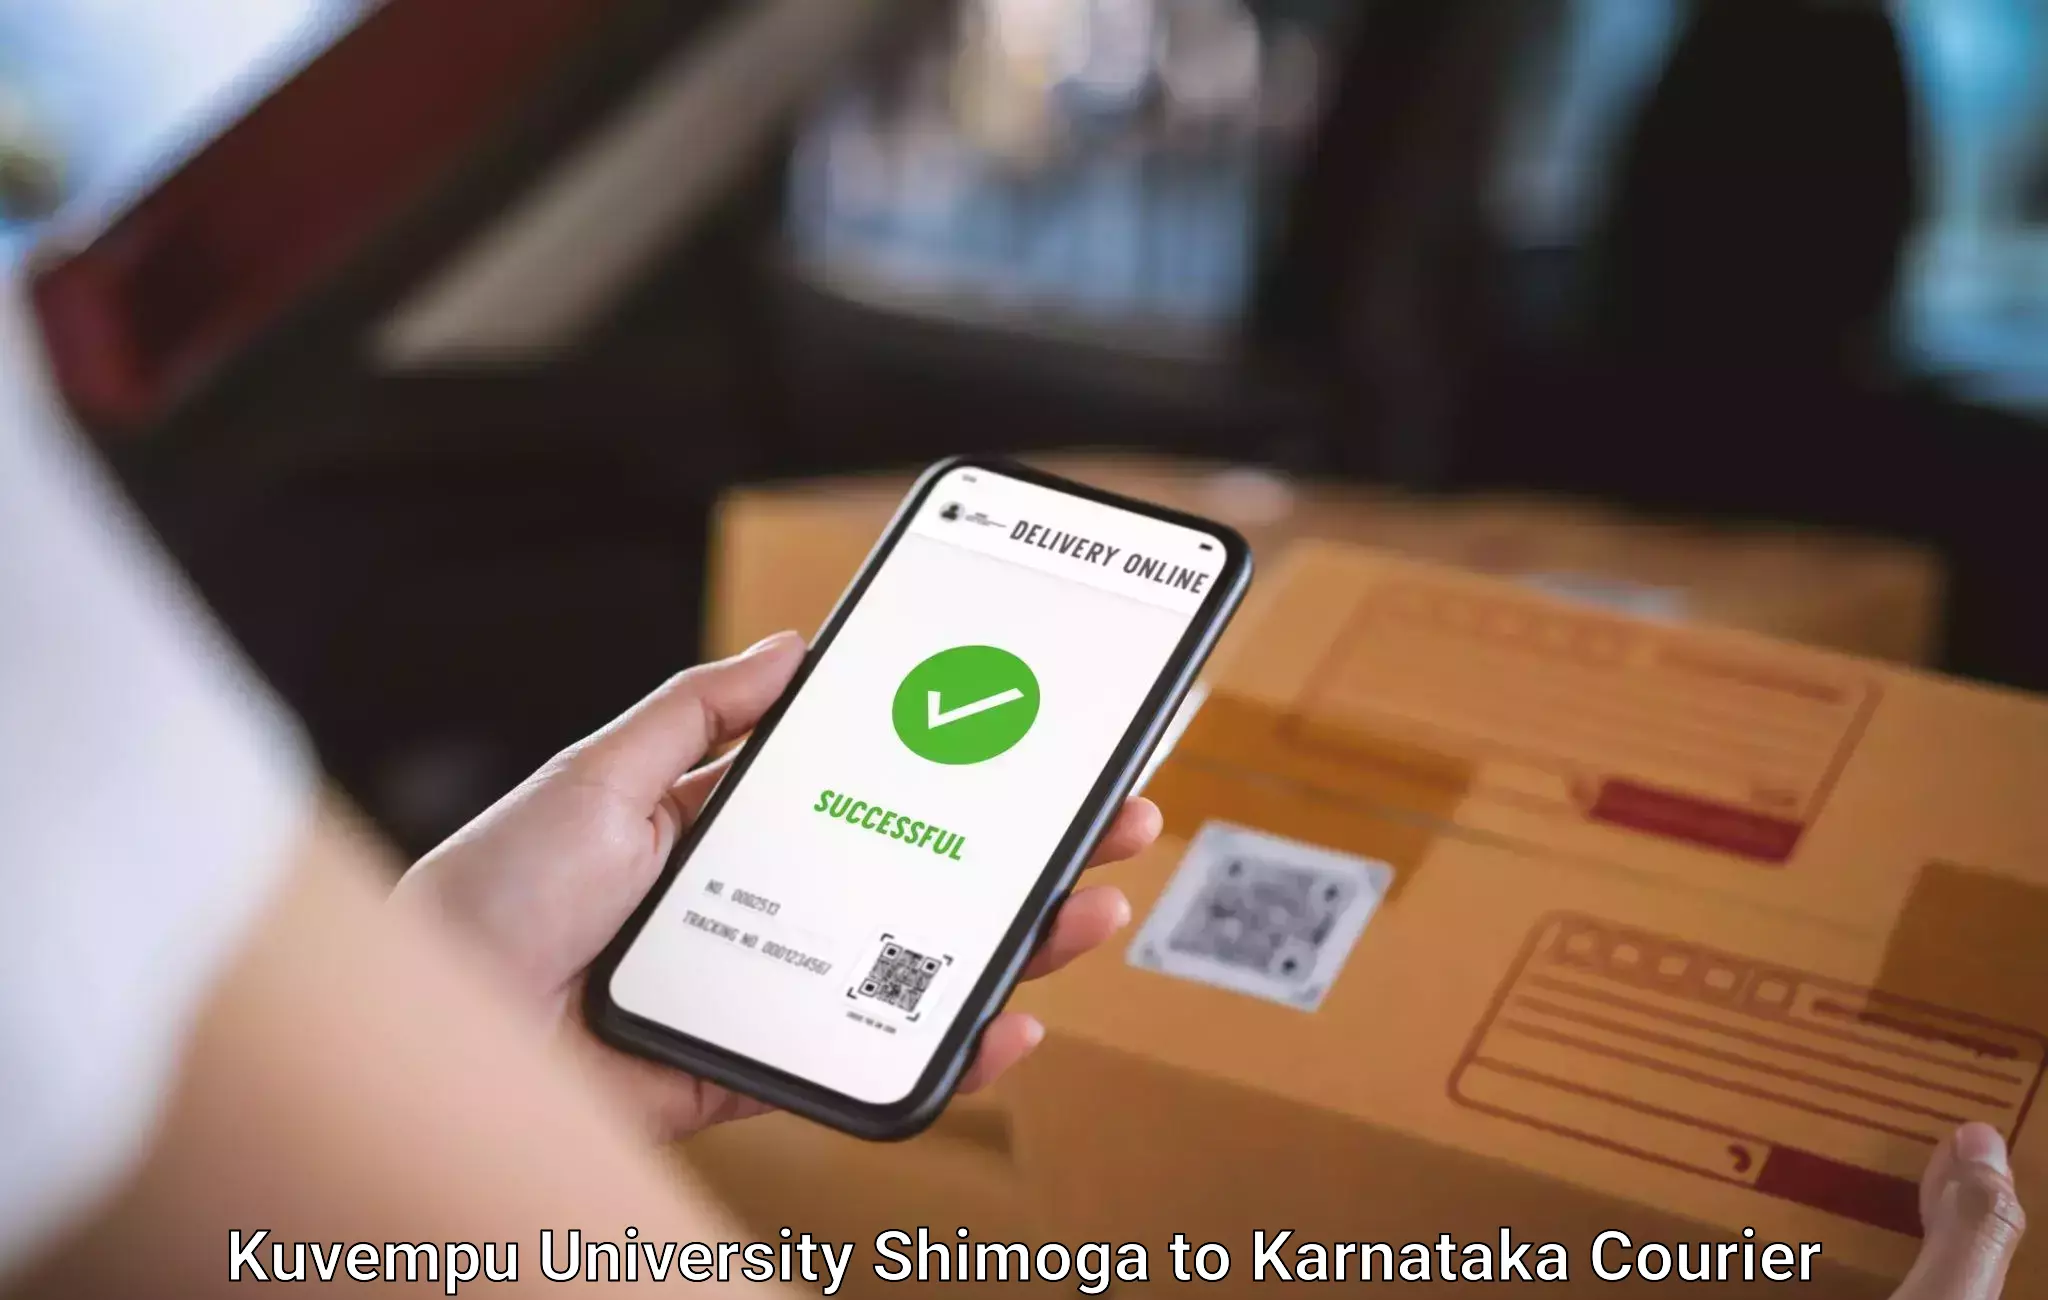 Luggage forwarding service Kuvempu University Shimoga to Karnataka